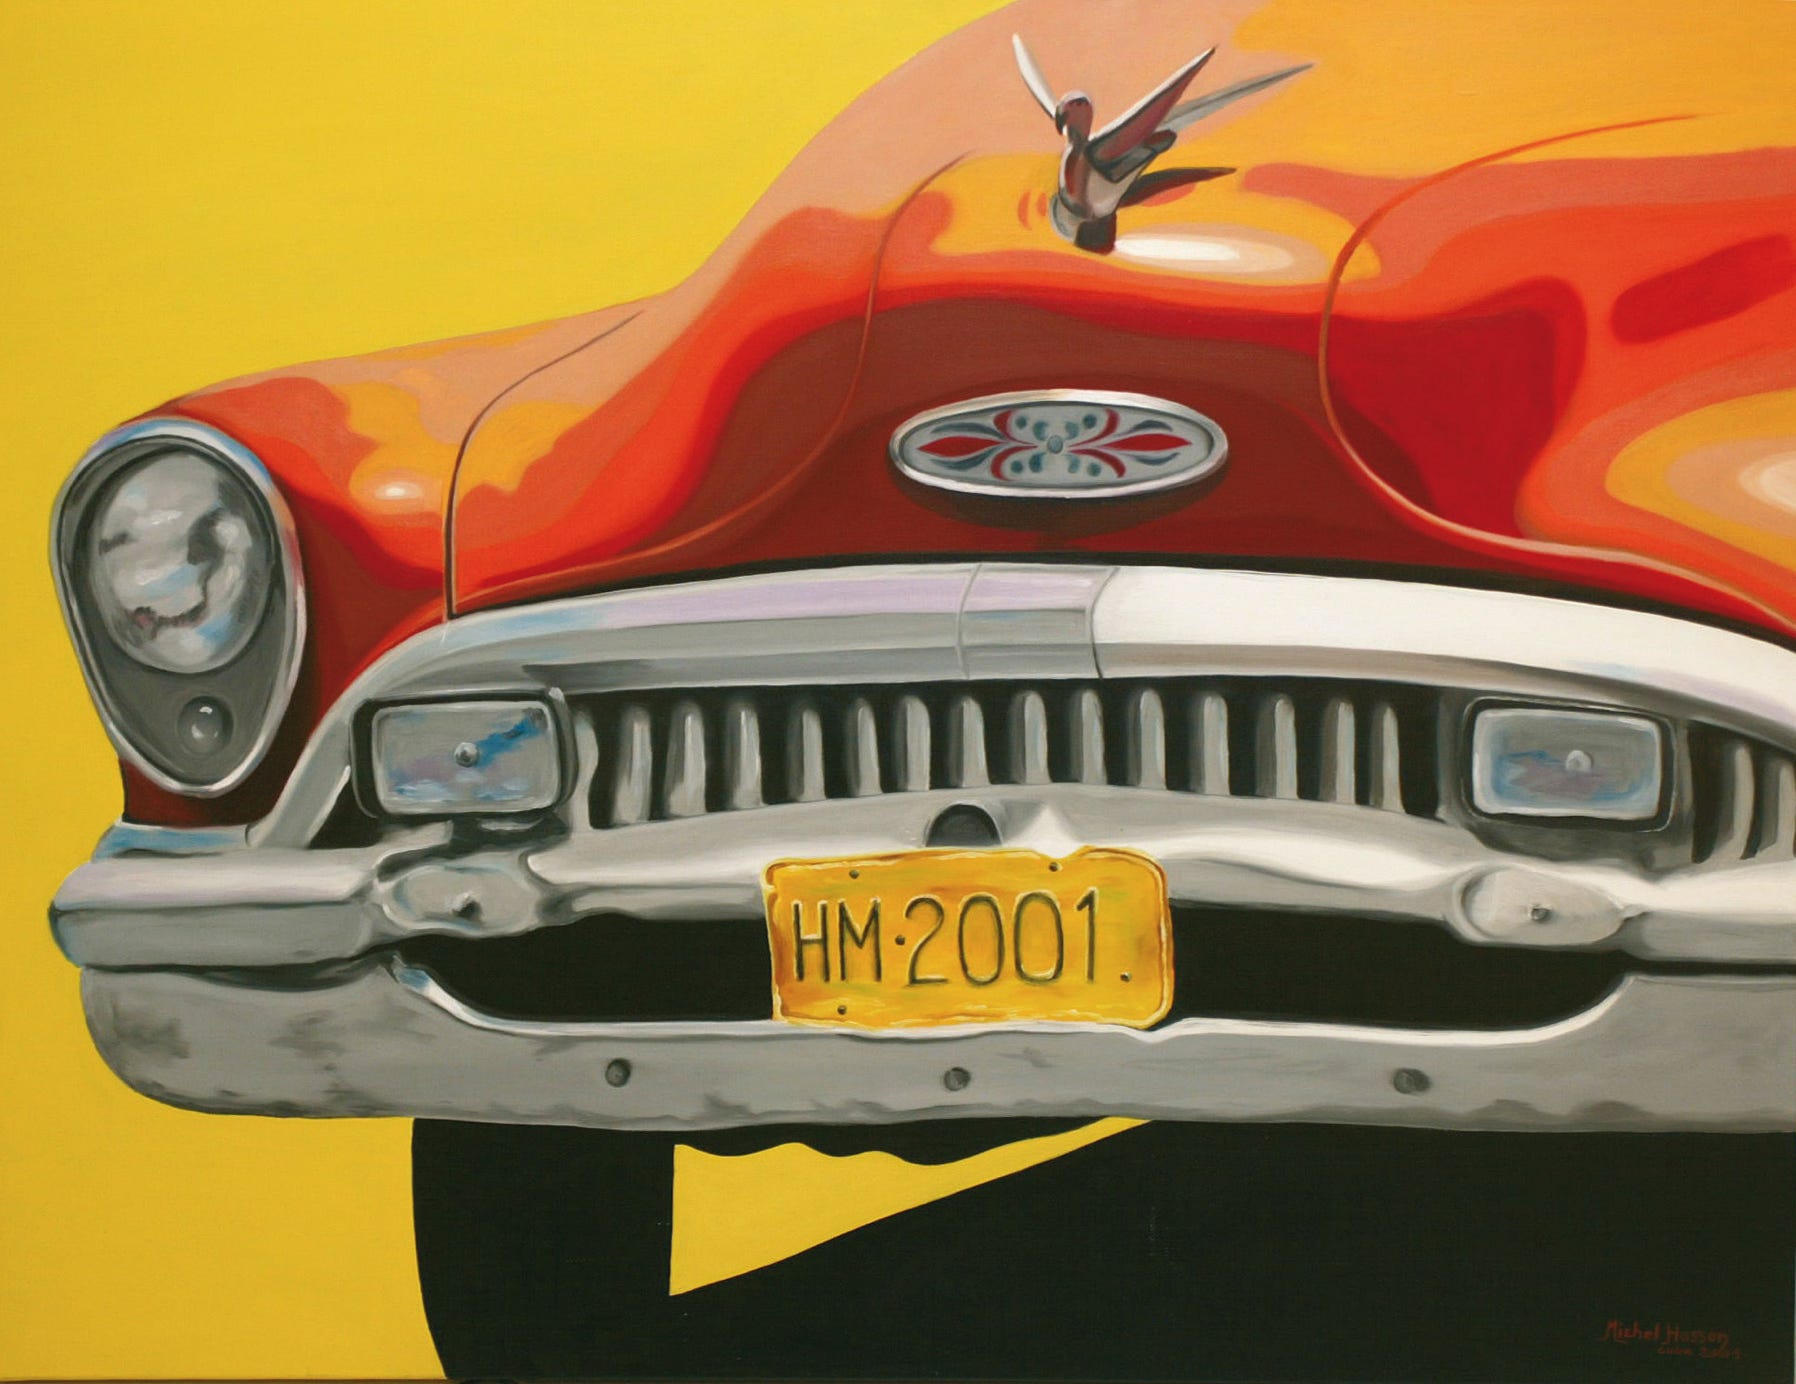 Cuba voiture, par Michel Hasson